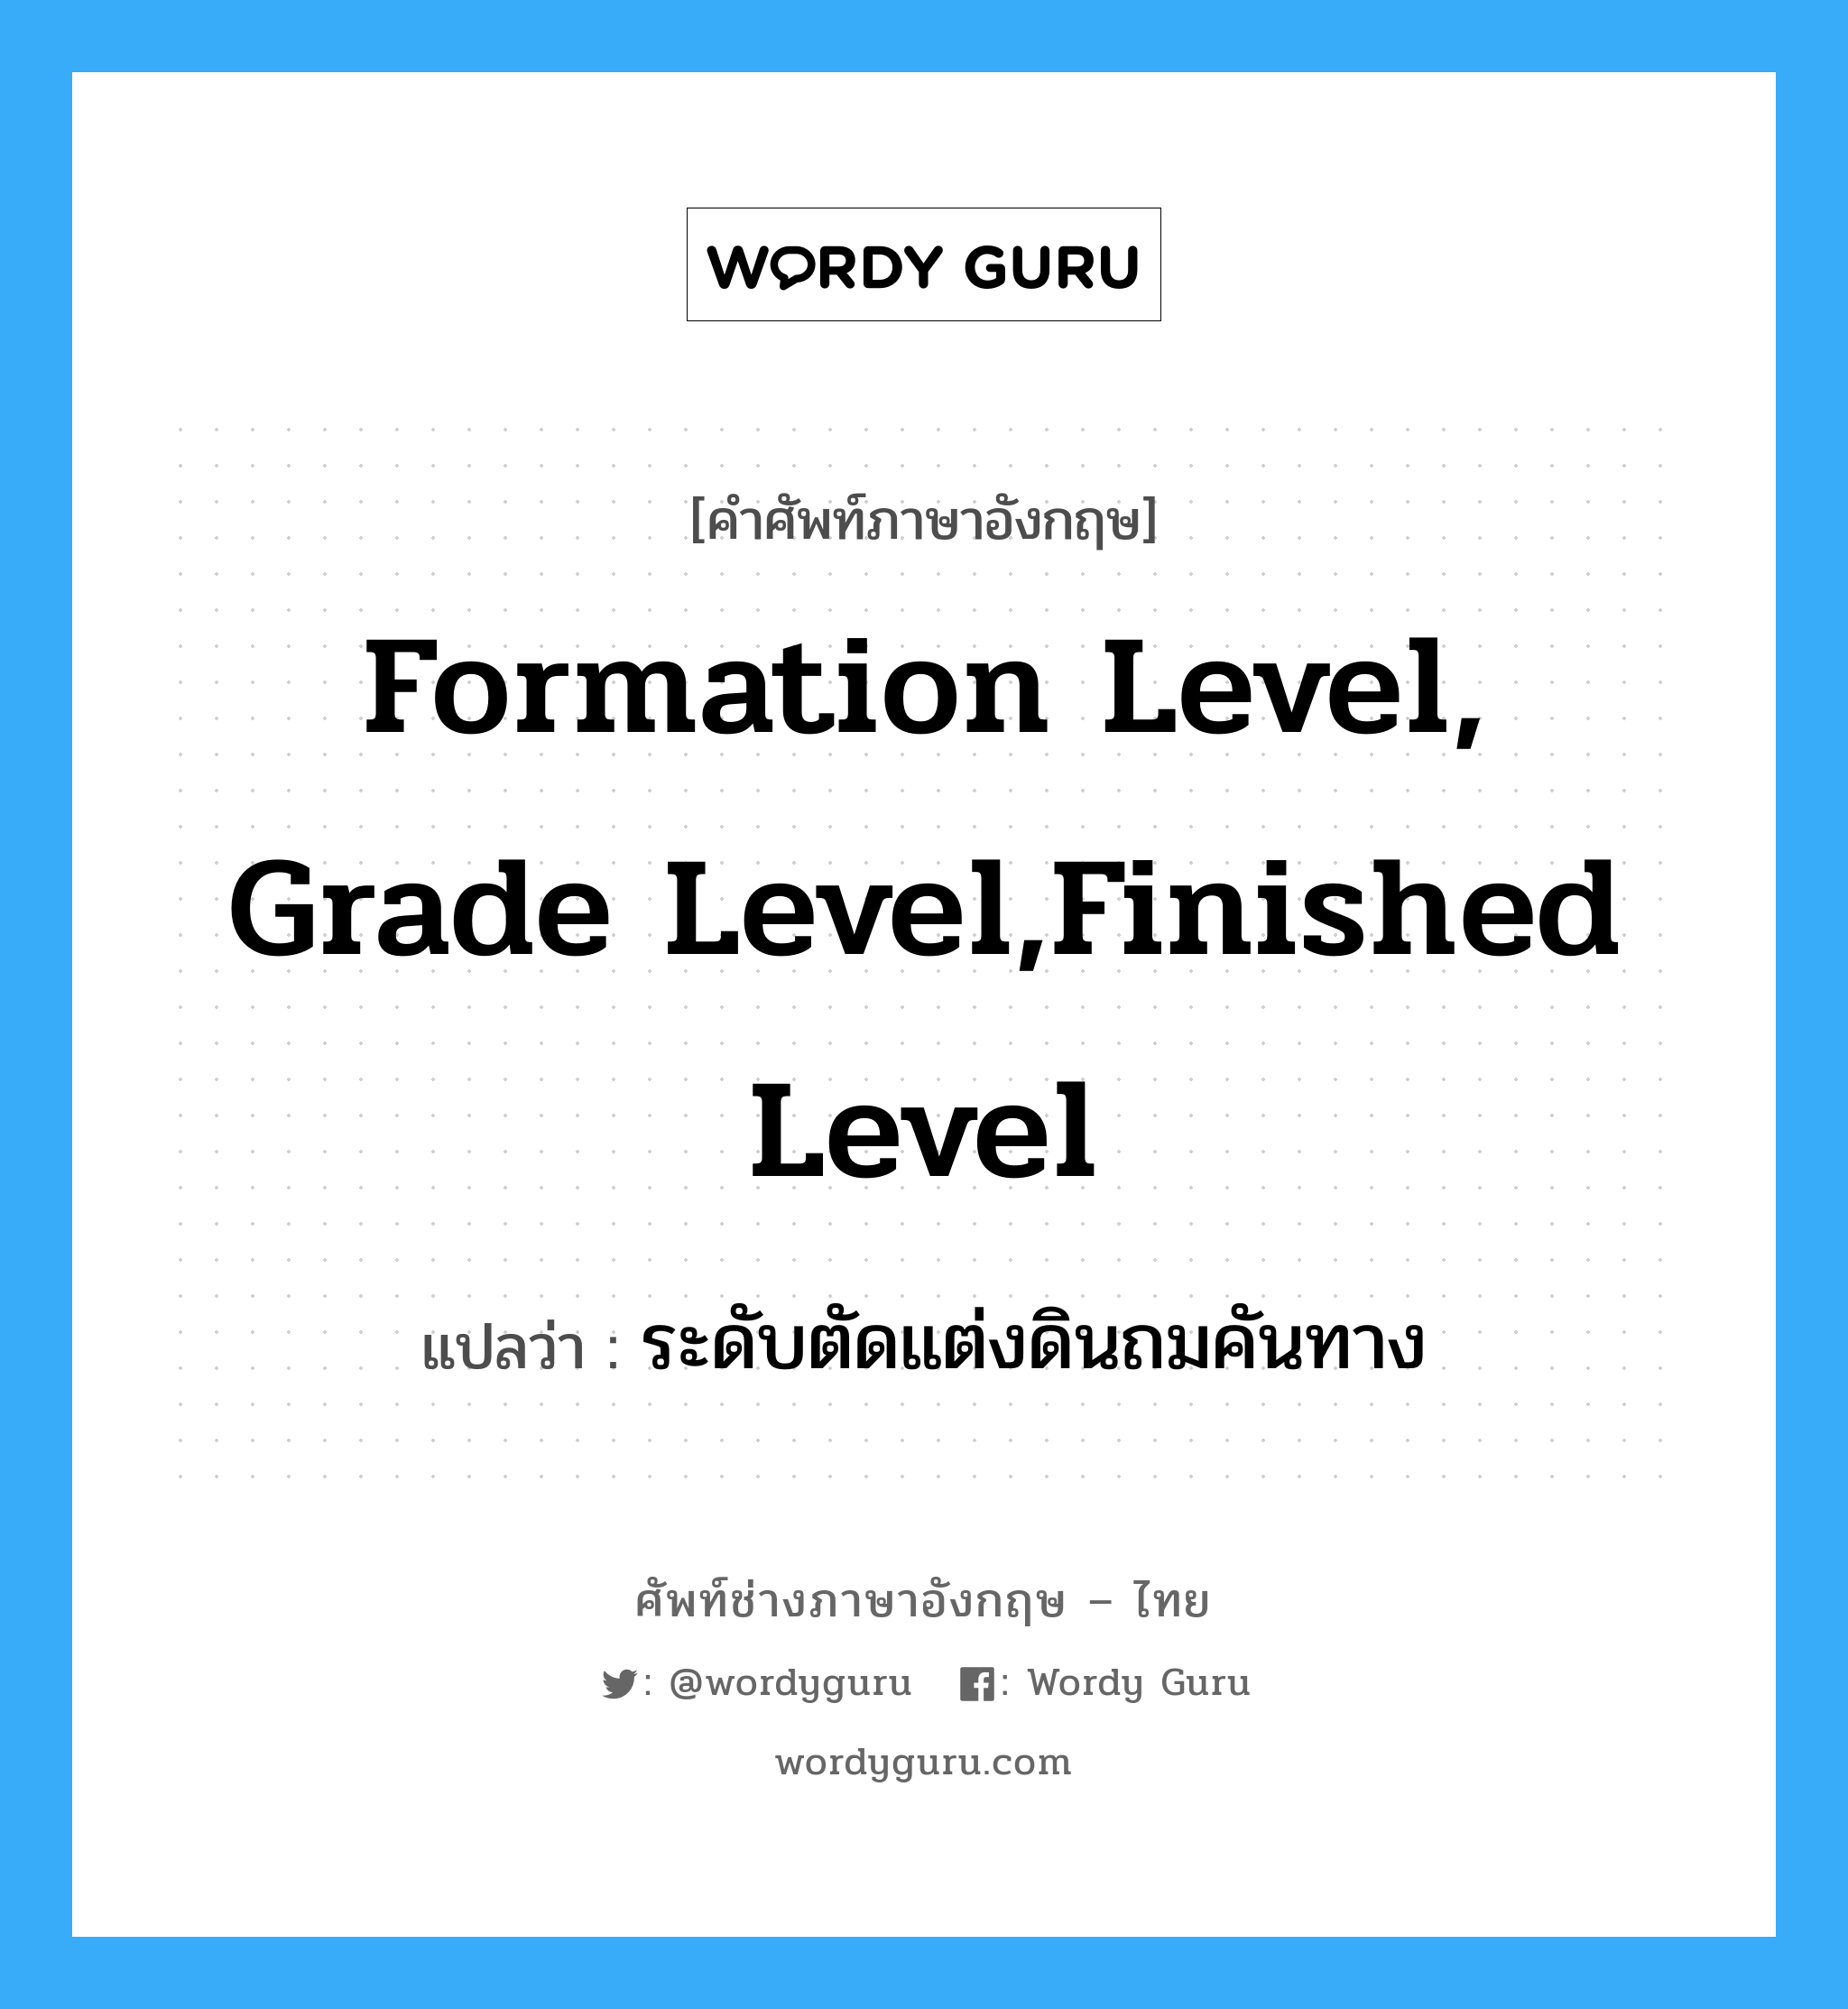 ระดับตัดแต่งดินถมคันทาง ภาษาอังกฤษ?, คำศัพท์ช่างภาษาอังกฤษ - ไทย ระดับตัดแต่งดินถมคันทาง คำศัพท์ภาษาอังกฤษ ระดับตัดแต่งดินถมคันทาง แปลว่า formation level, grade level,finished level